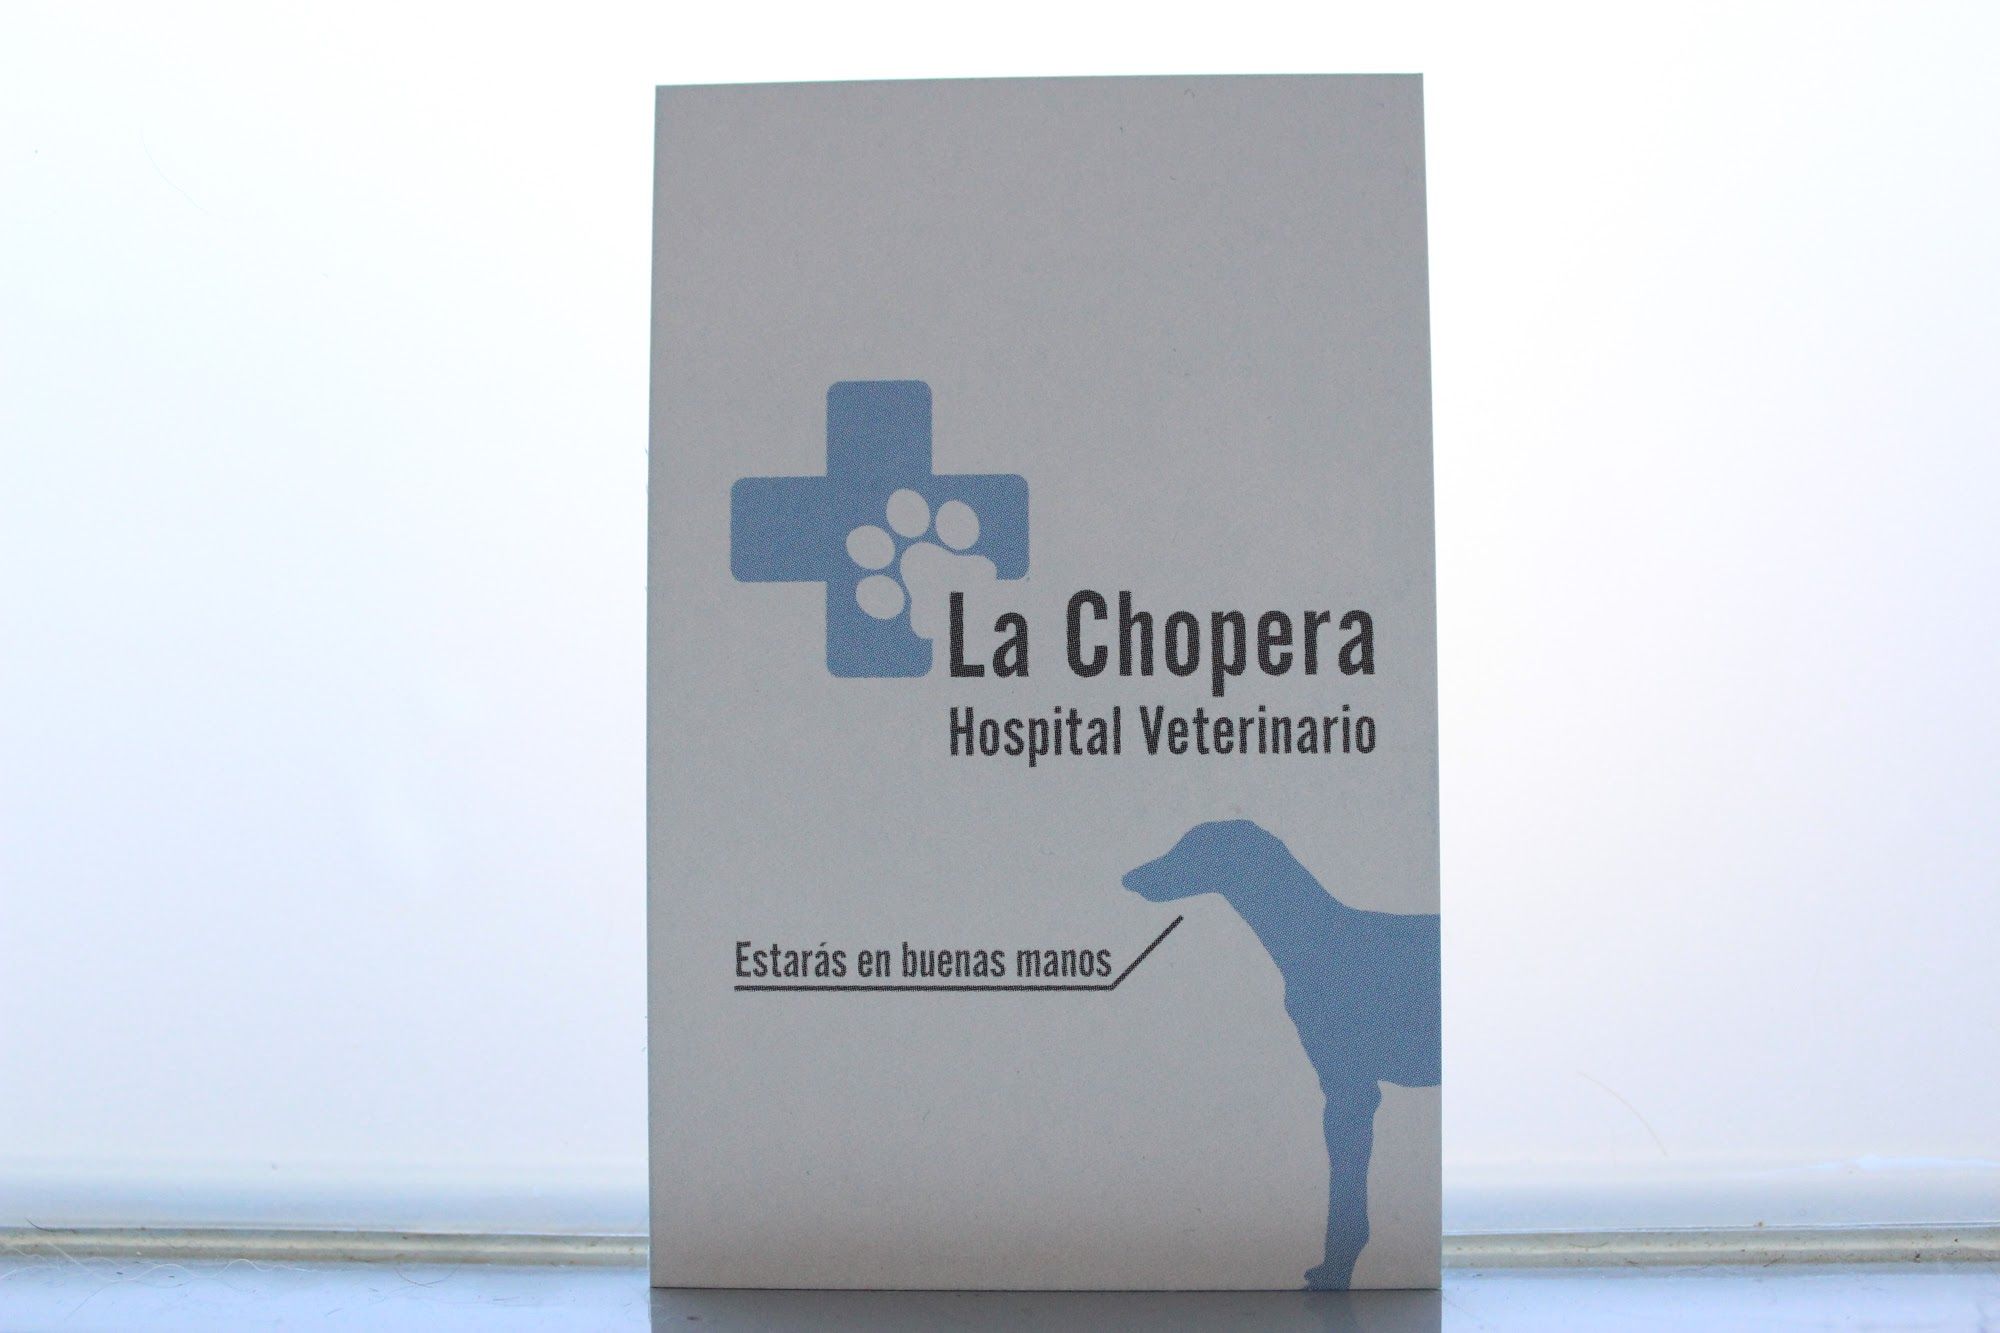 Foto 11 de Veterinarios en Alcobendas | La Chopera Hospital Veterinario